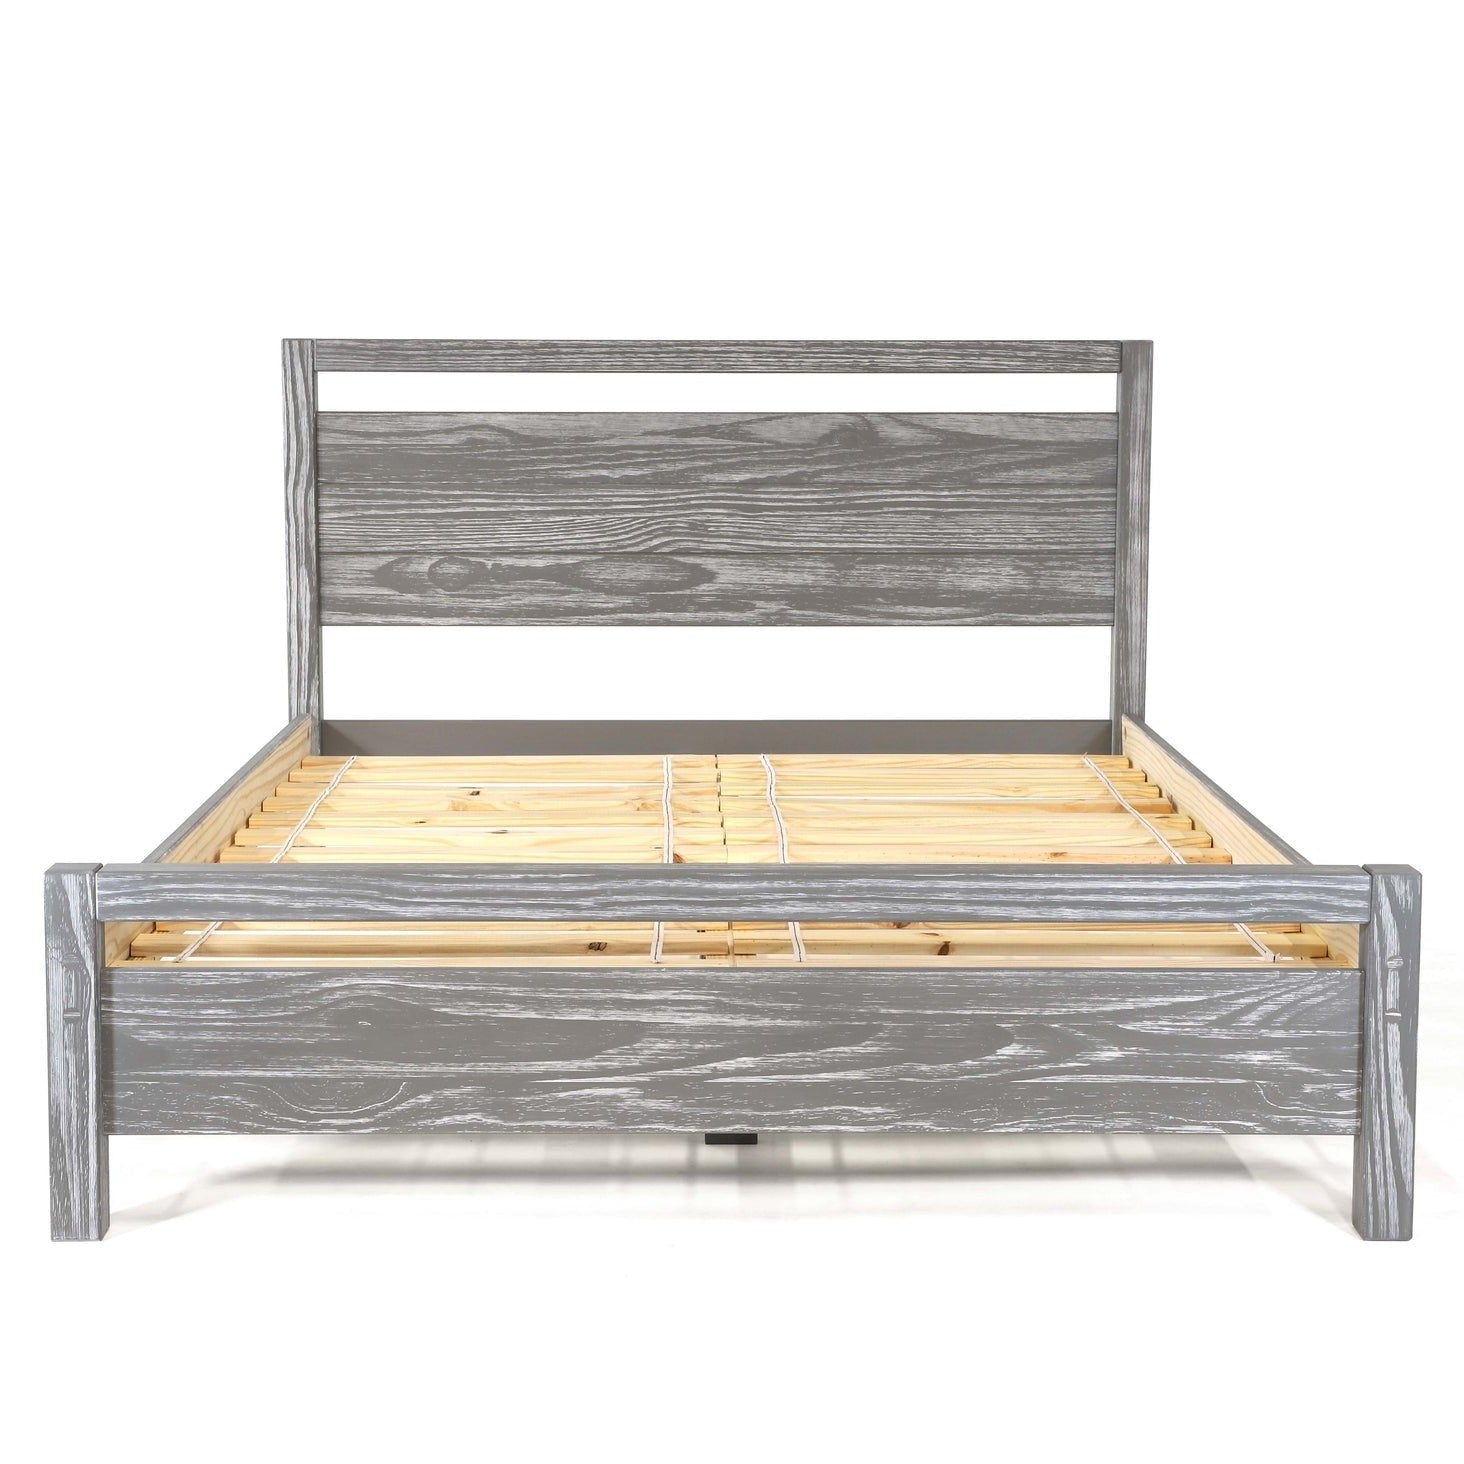 Bedroom > Bed Frames > Platform Beds - King Size FarmHouse Traditional Rustic Gray Platform Bed